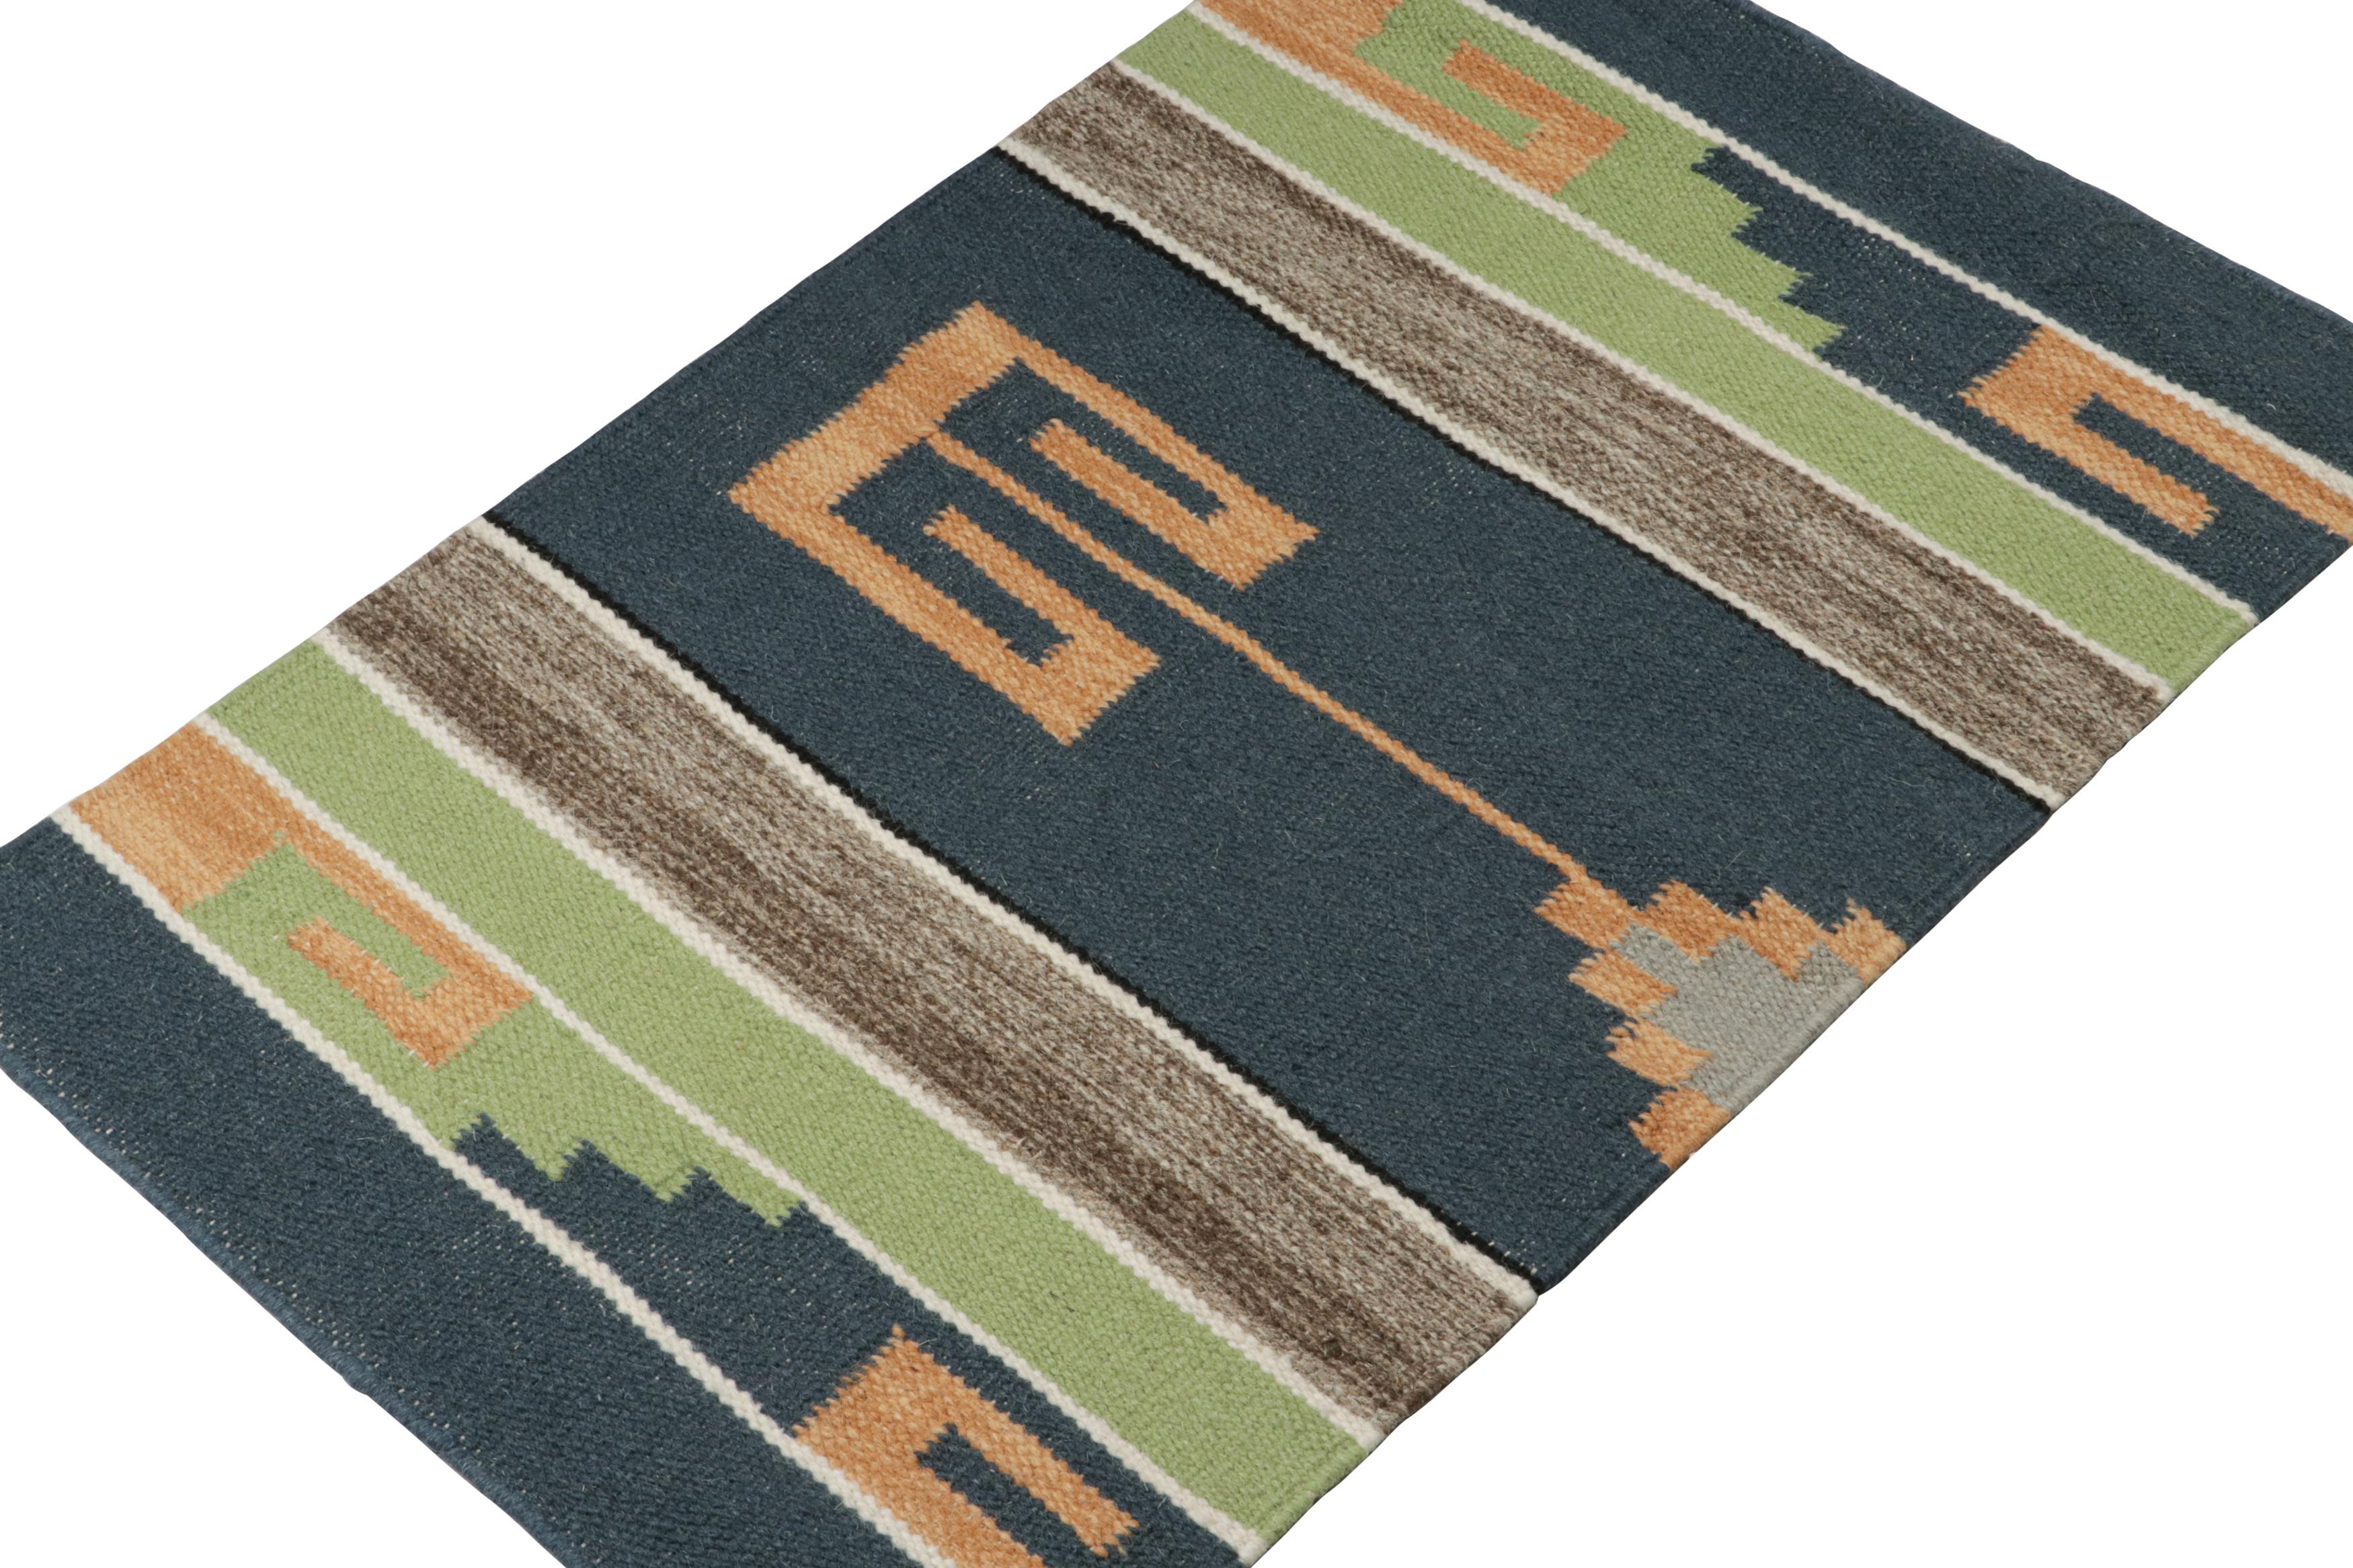 Inspiriert von Stammeskelims ist dieses 2x3 Stück eine erfrischende Neuheit in der Flachgewebe-Kollektion von Rug & Kilim.  

Über das Design: 

Dieser zeitgenössische Kelim ist aus Wolle handgewebt und trägt geometrische Muster in modernen Farben